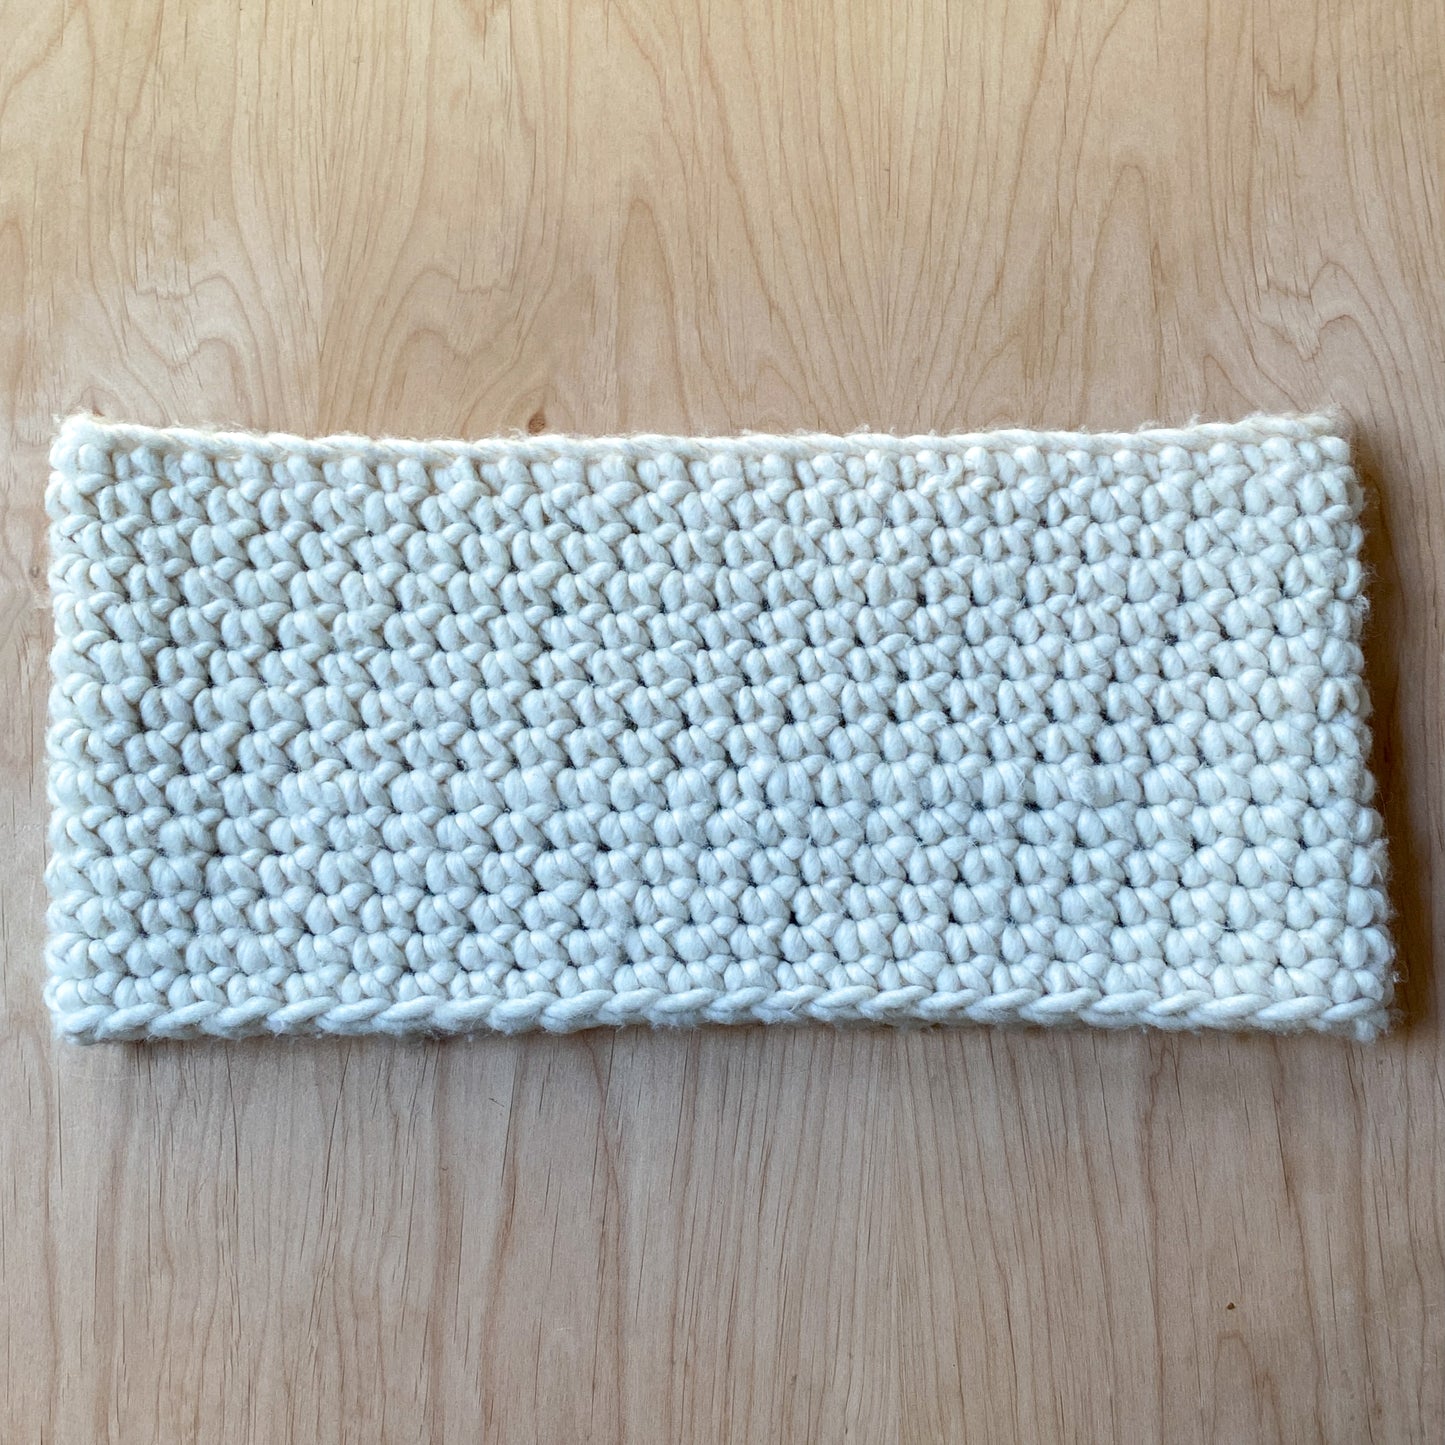 Single Crochet Cowl Pattern